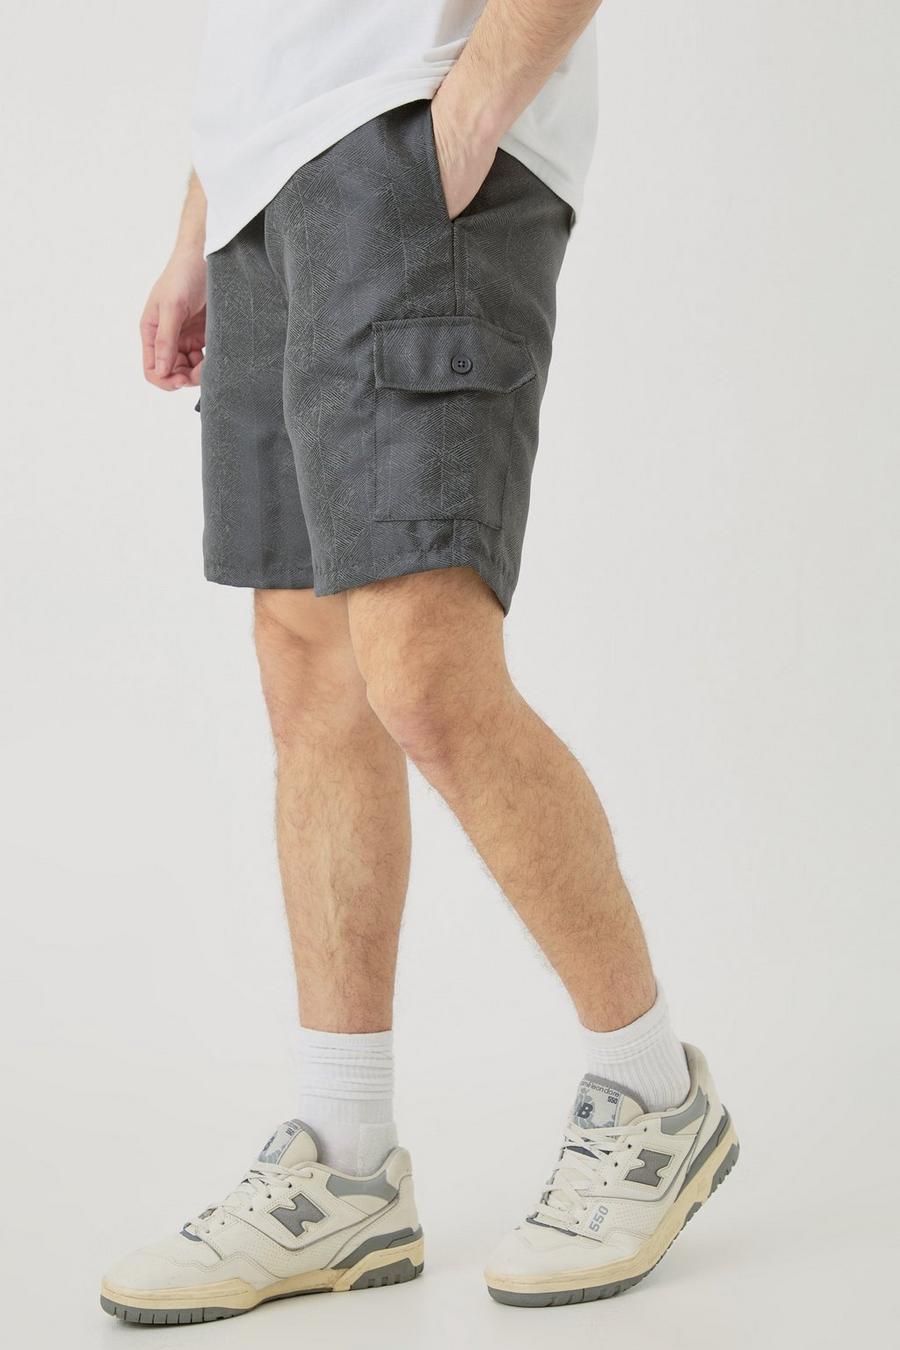 Pantalón corto Tall cargo texturizado con cintura elástica en color carbón, Charcoal image number 1